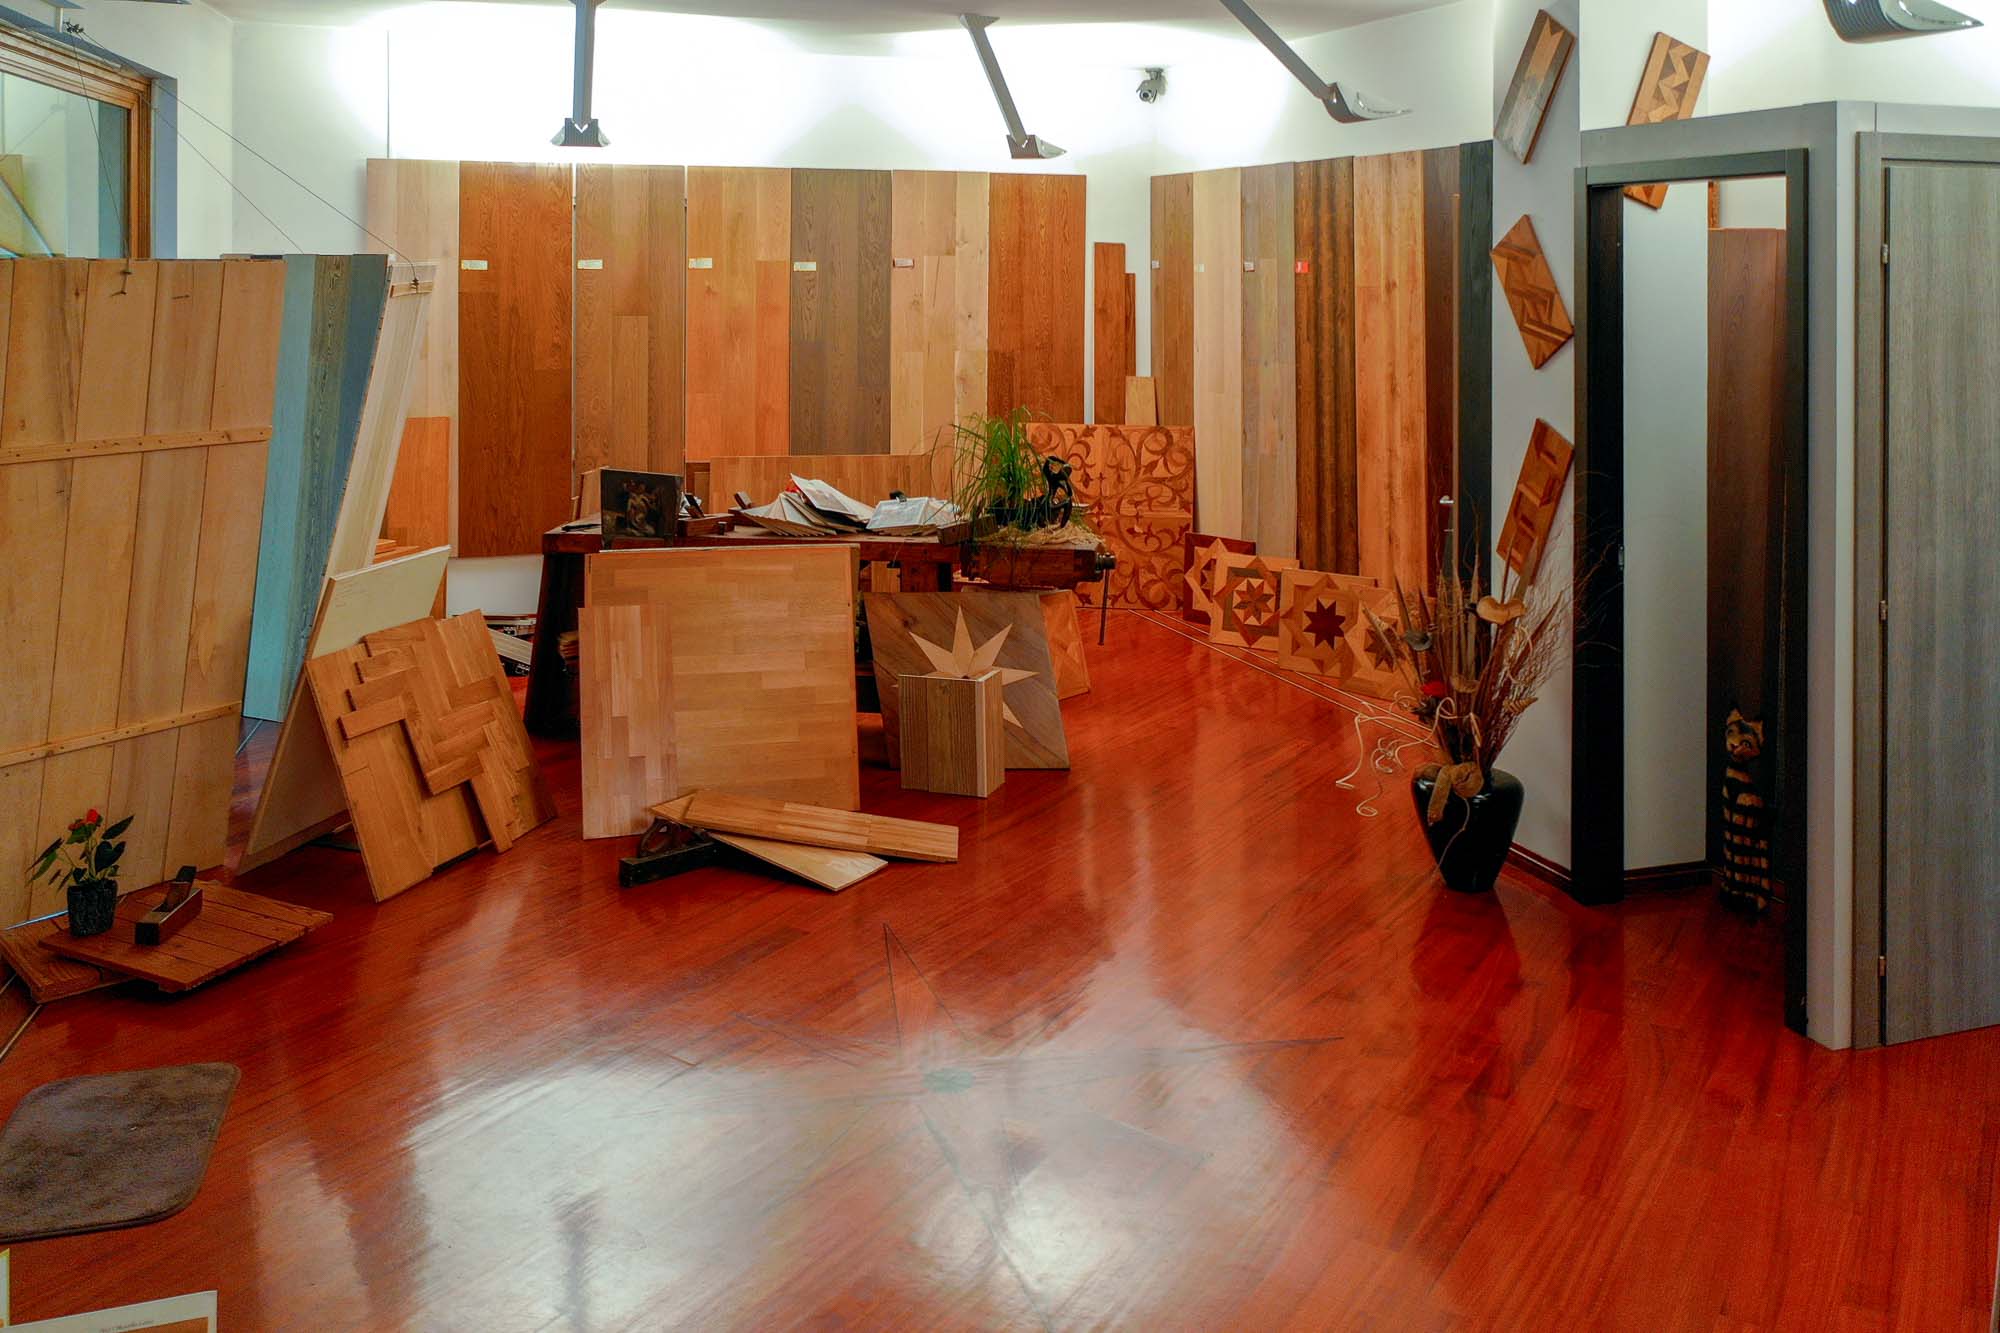 showroom ra legno pavimenti parquet borgosesia posa pavimenti porte legno